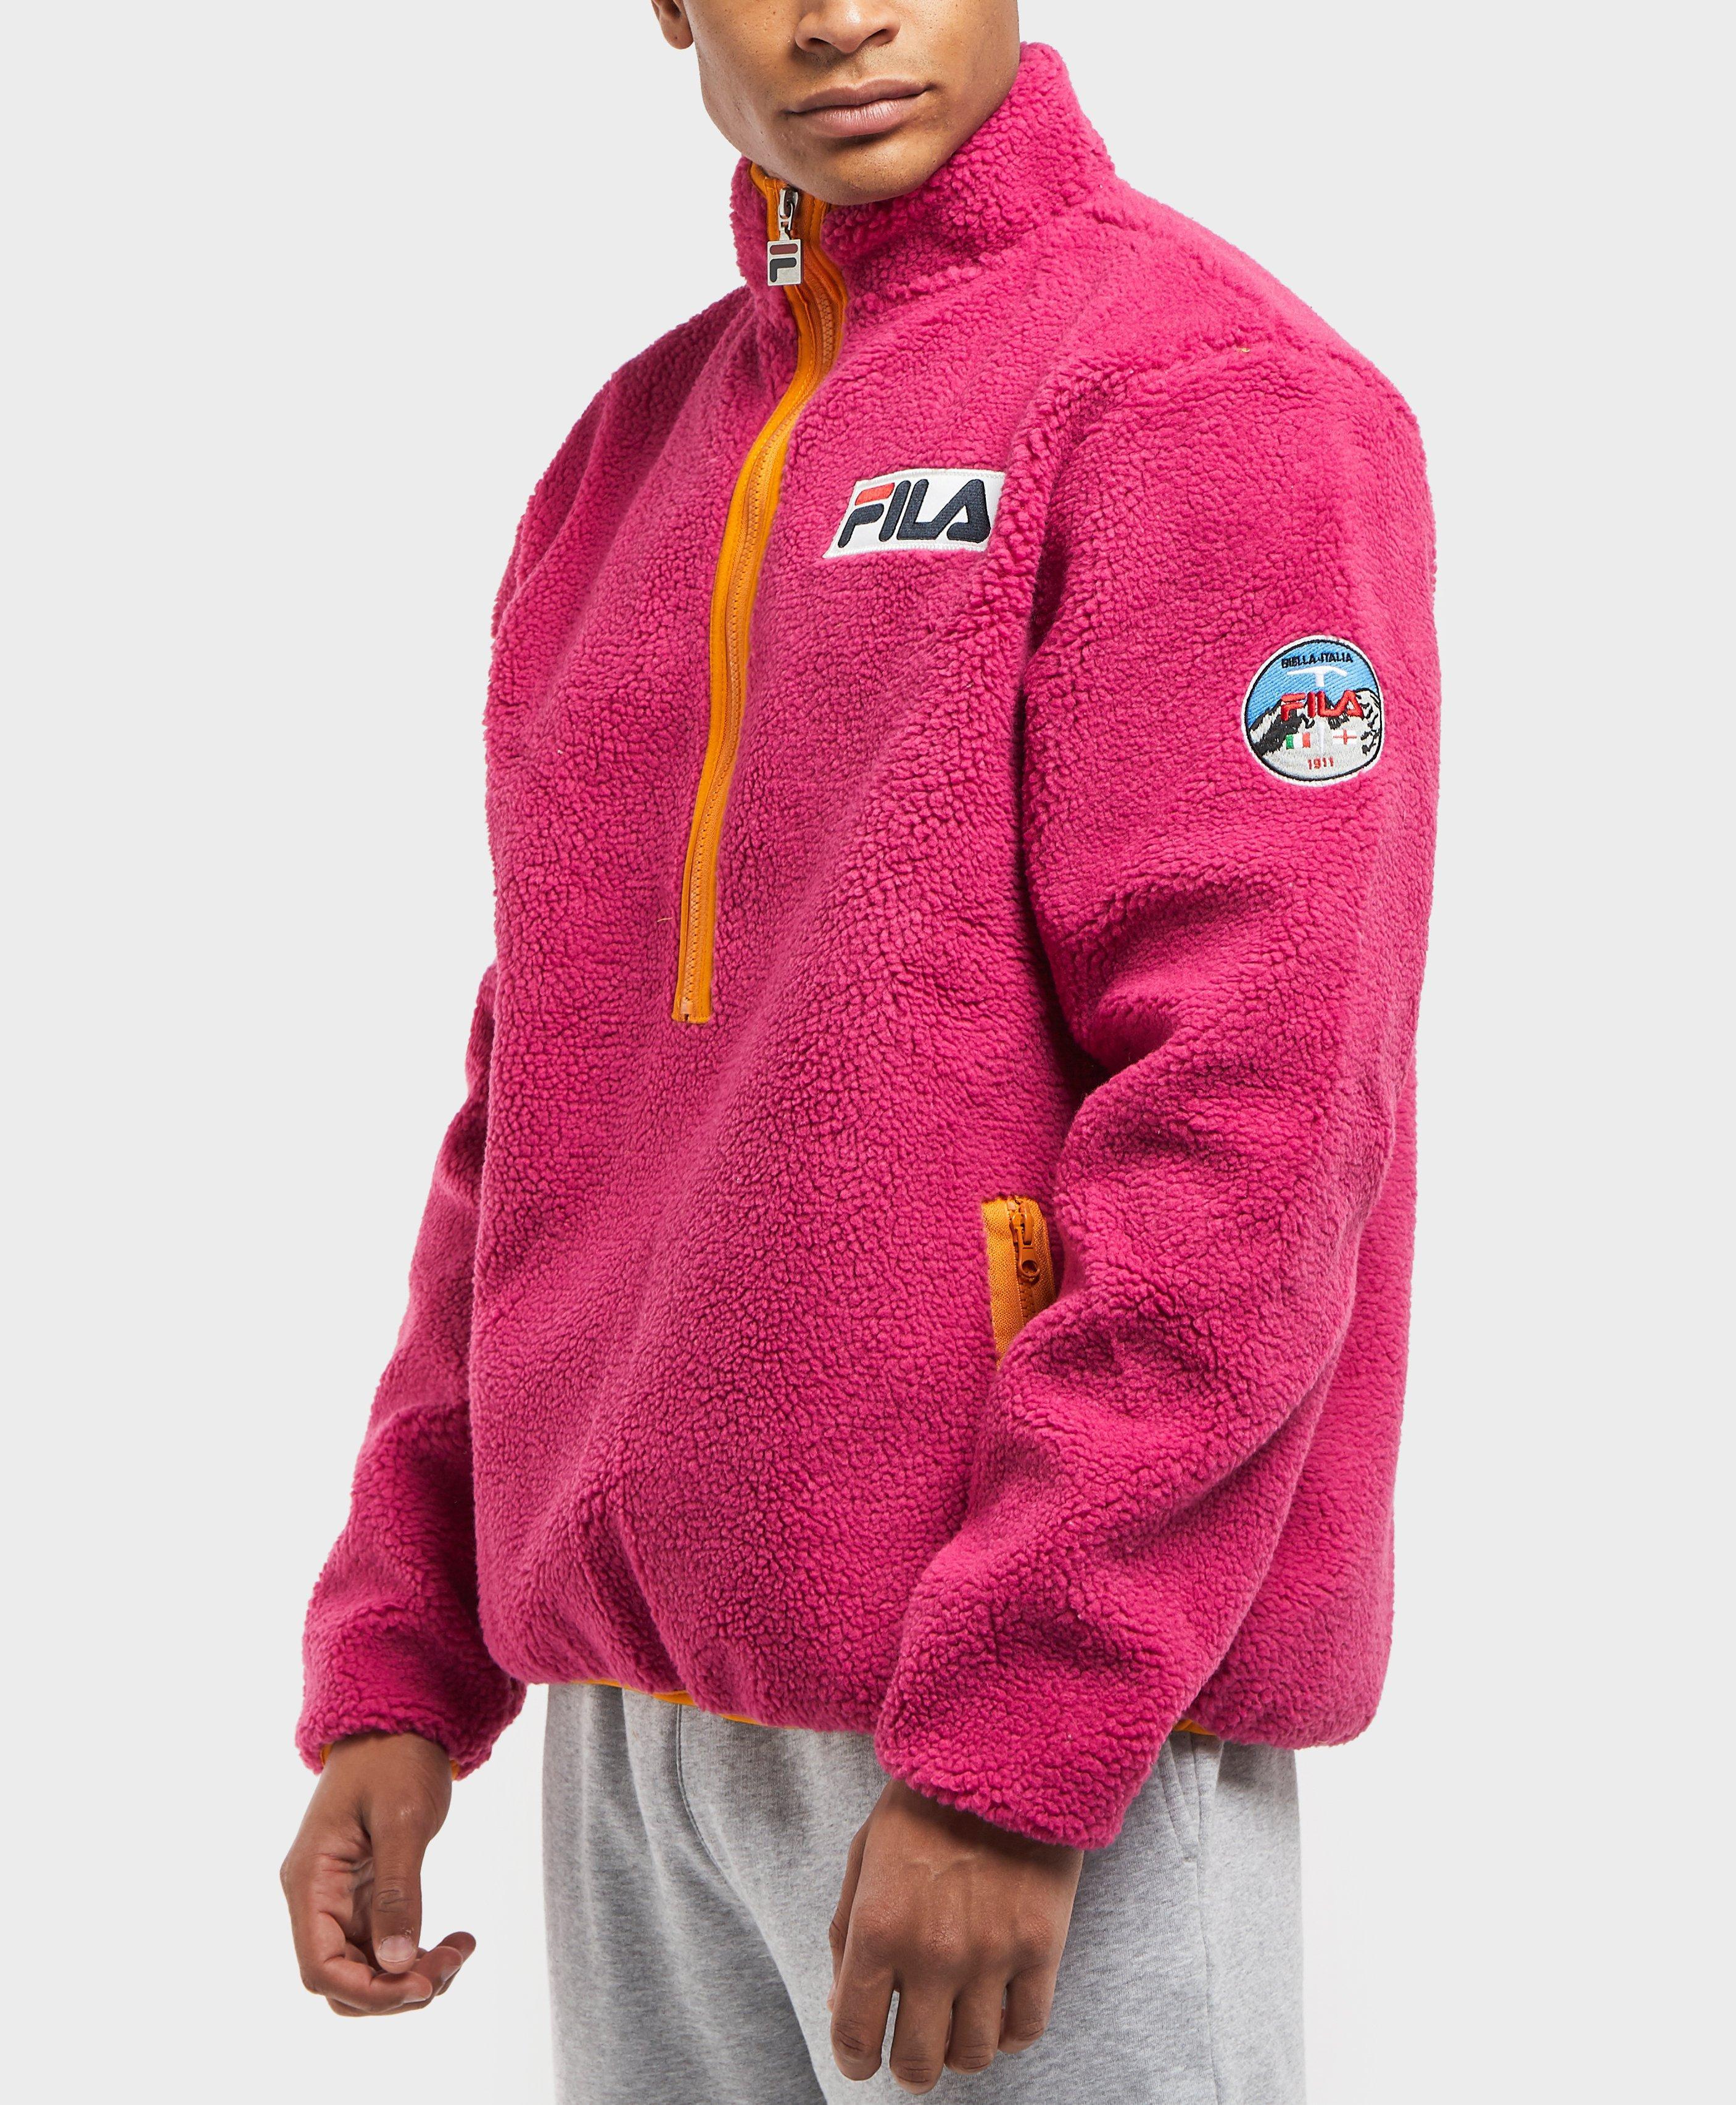 Fila Sella Sherpa Half-zip Fleece Jacket in Pink for Men - Lyst